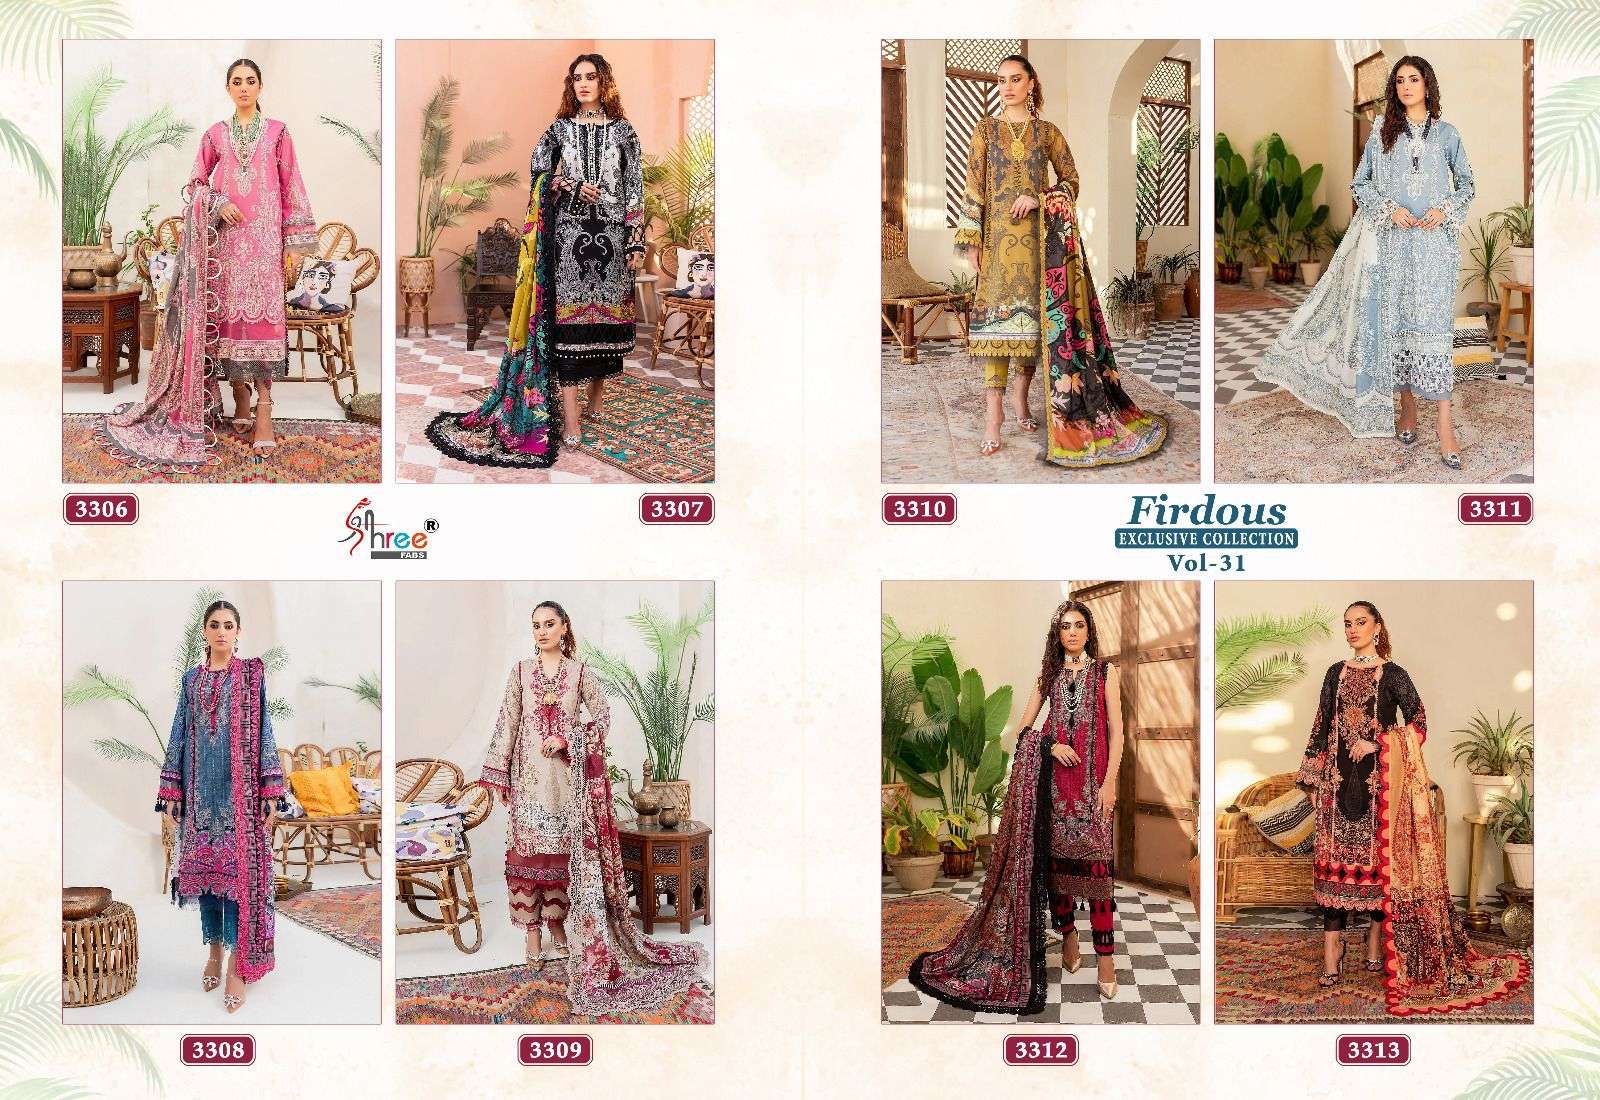 Shree Firdous Vol 31 Cotton Dupatta Pakistani Suits Wholesale catalog